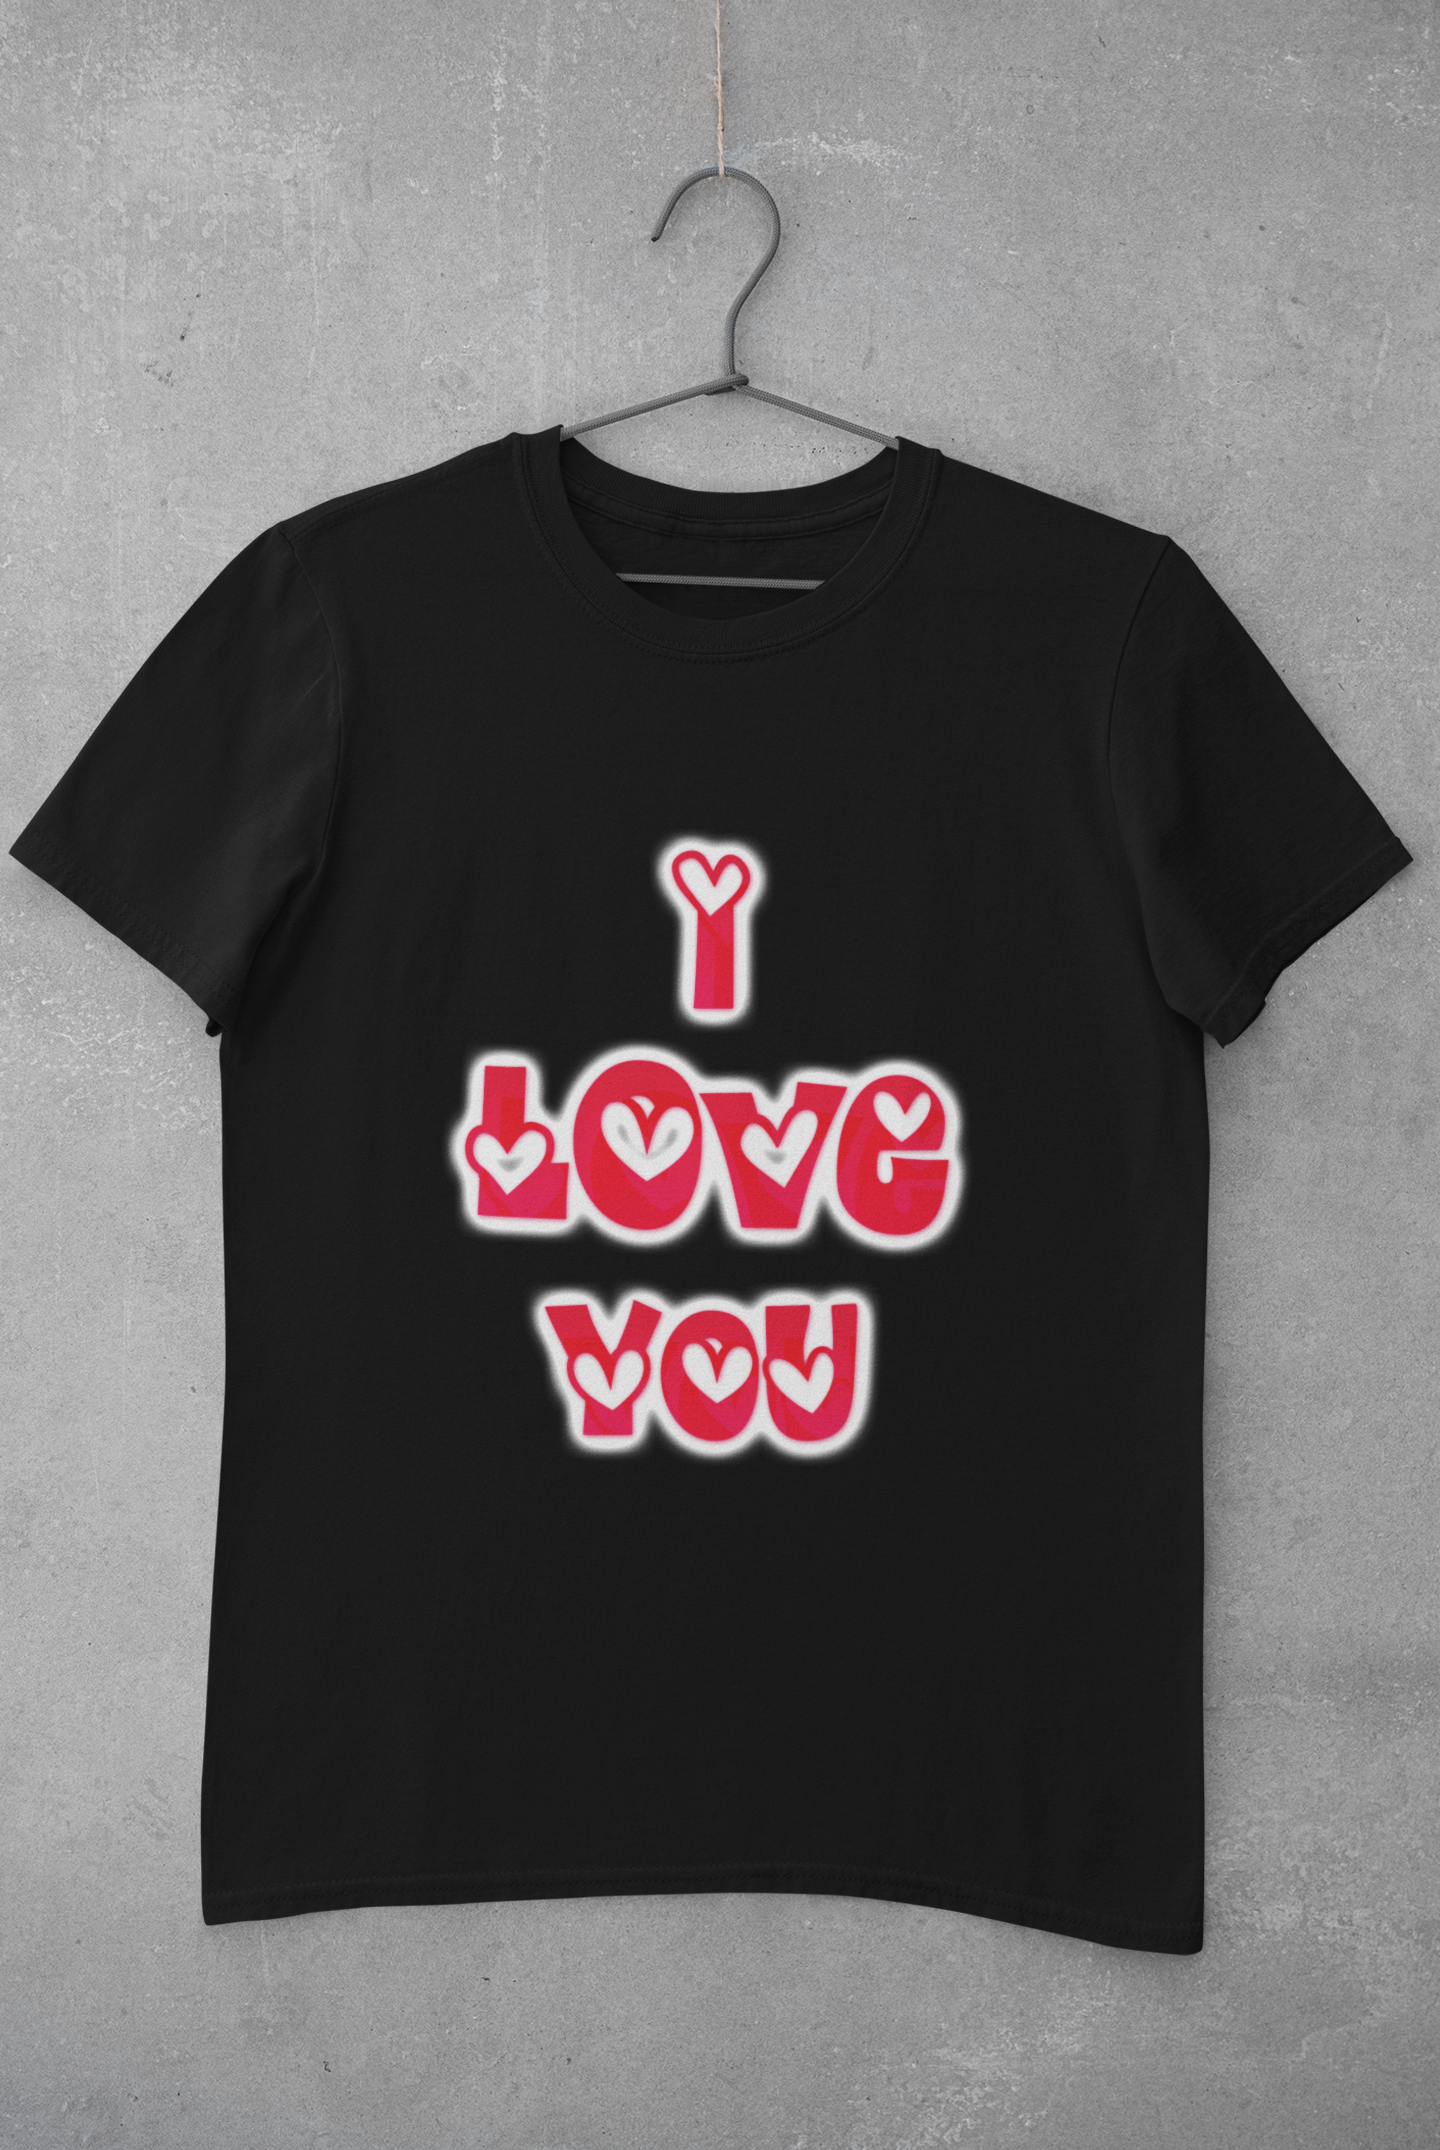 Women's T-shirt (I love you)